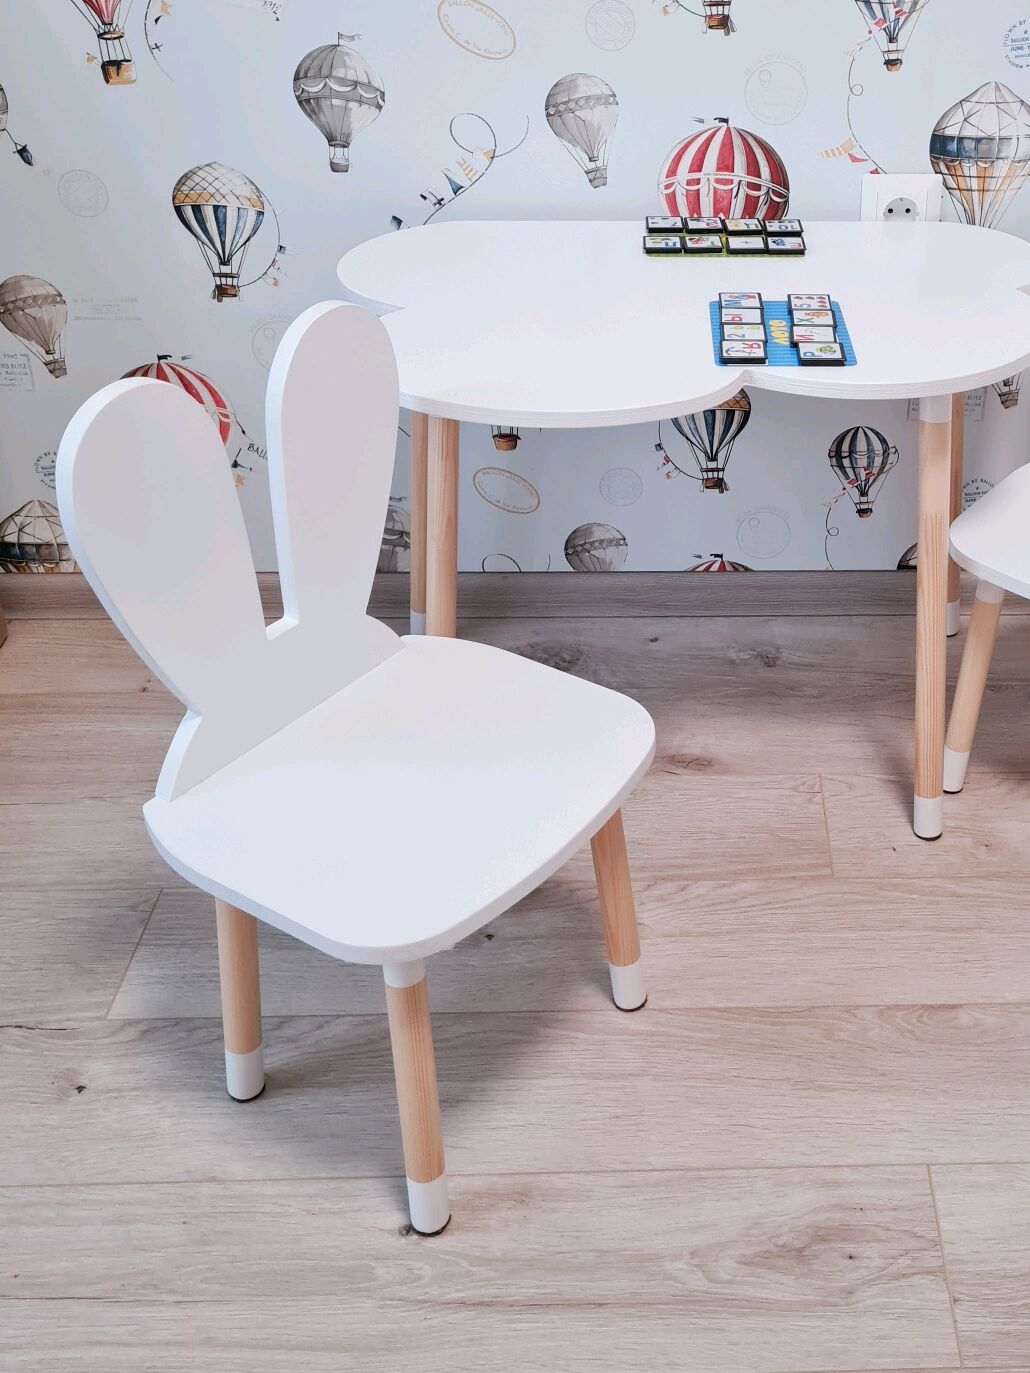 комплект детской мебели dimdomkids стол овал белый стул зайка белый